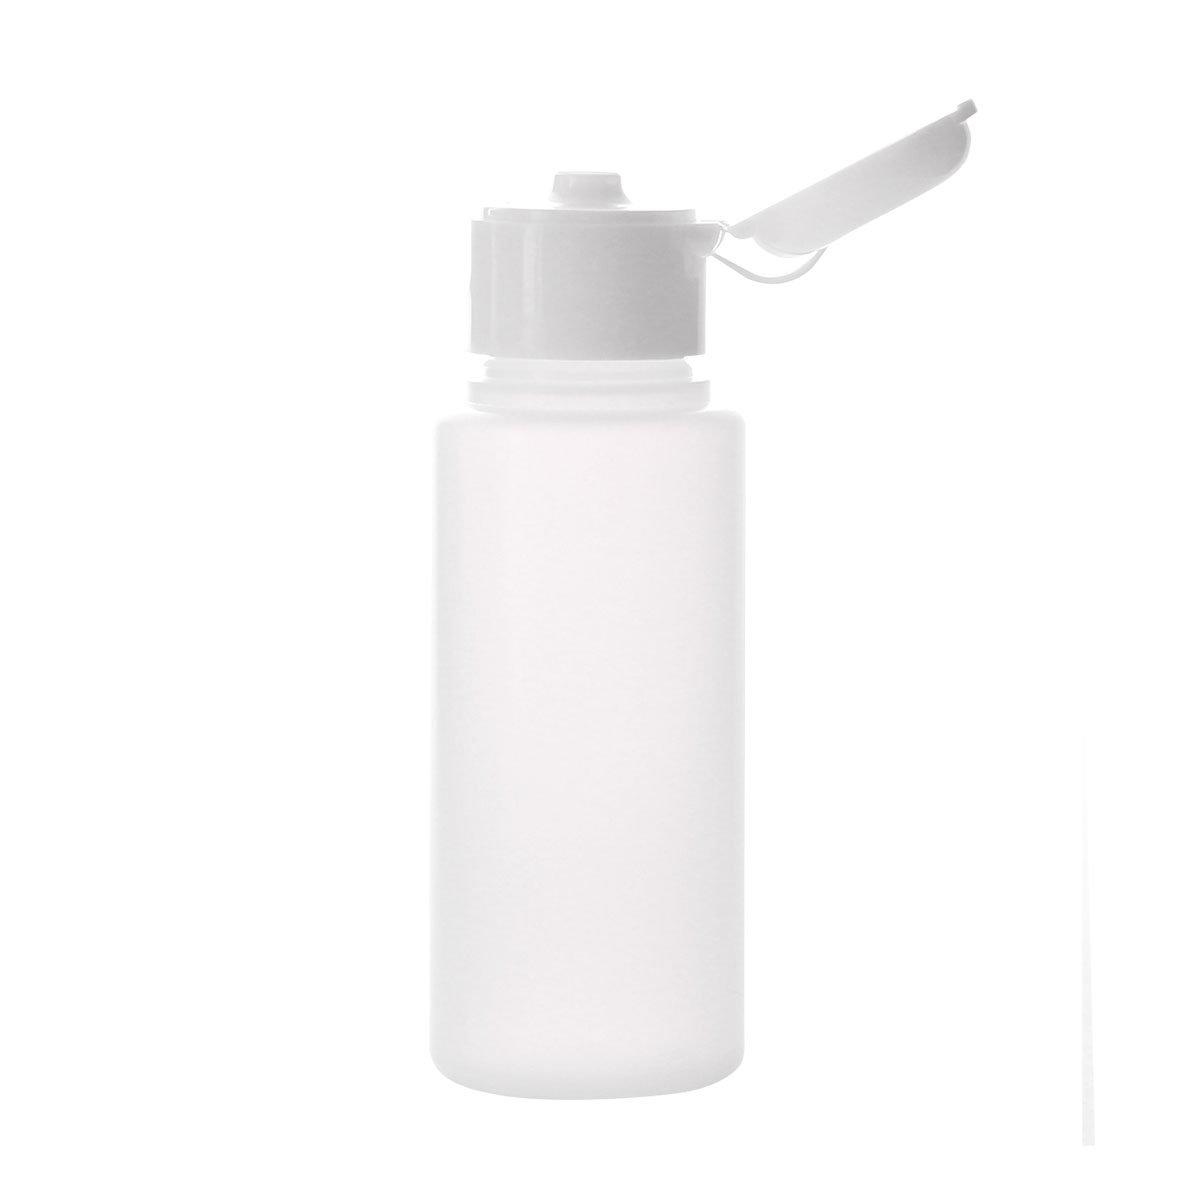 フロストプラボトル・ワンタッチキャップ[60ml]／1個 アルコールOK化粧水 容器 白色 ホワイト 詰め替え 容器 アトマイザー 手作り コスメ 化粧品 プラスチック